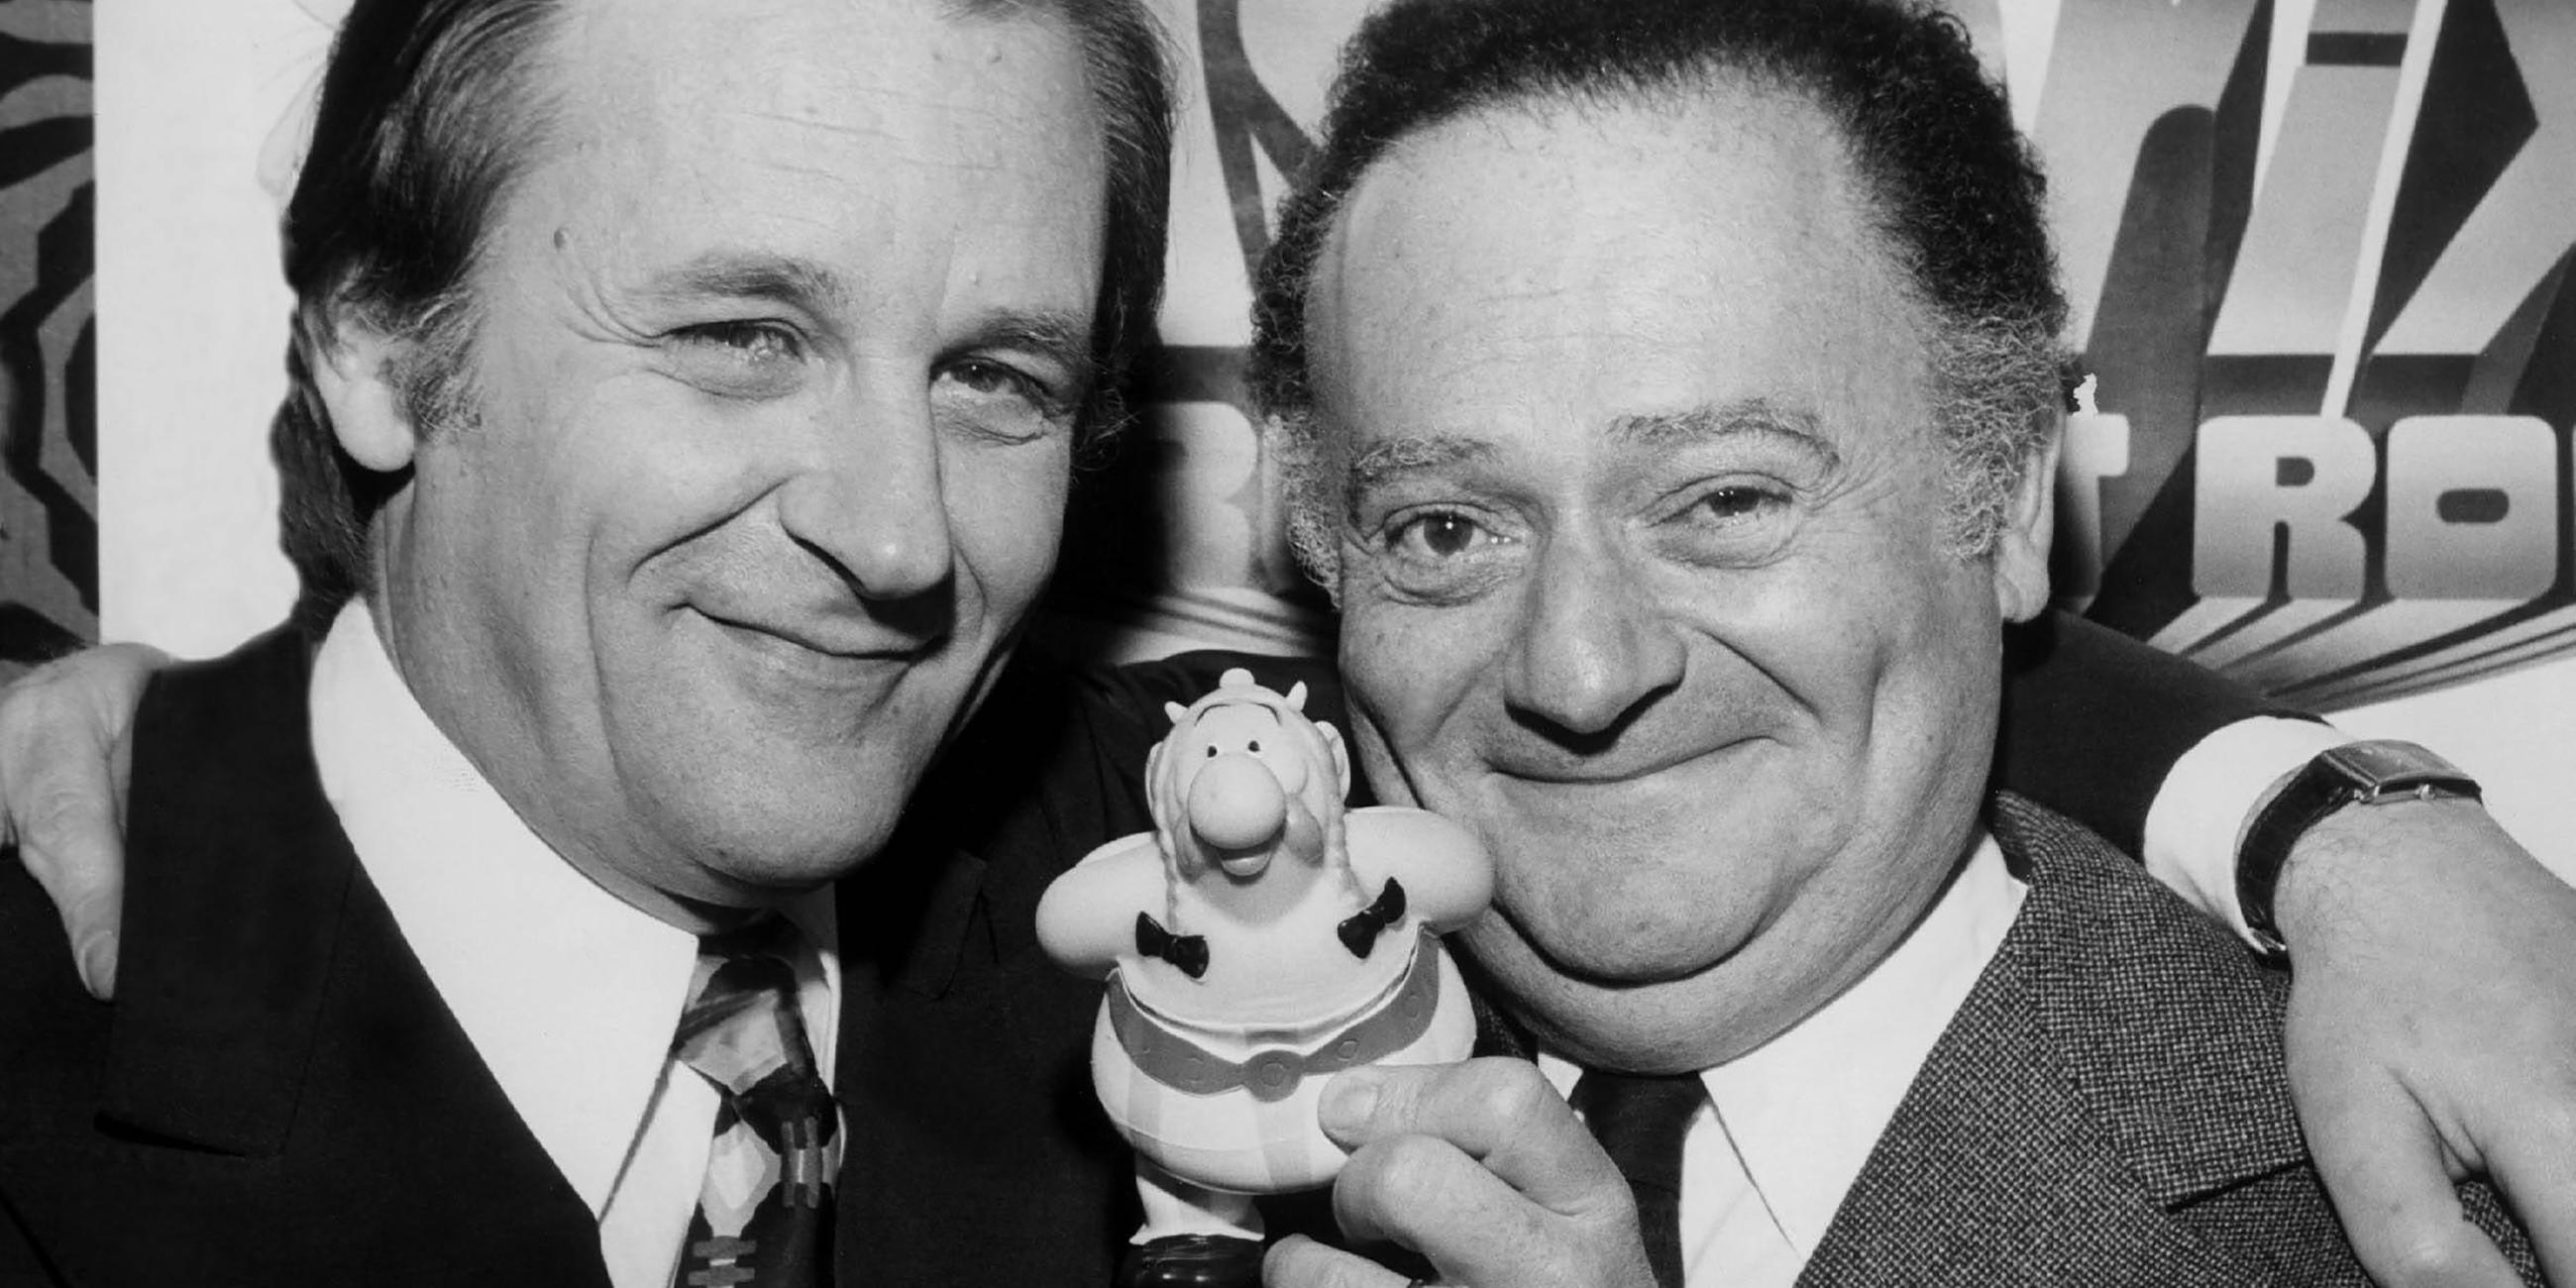 Archiv: Albert Uderzo und Rene Goscinny, Erfinder der Asterix-Comics.